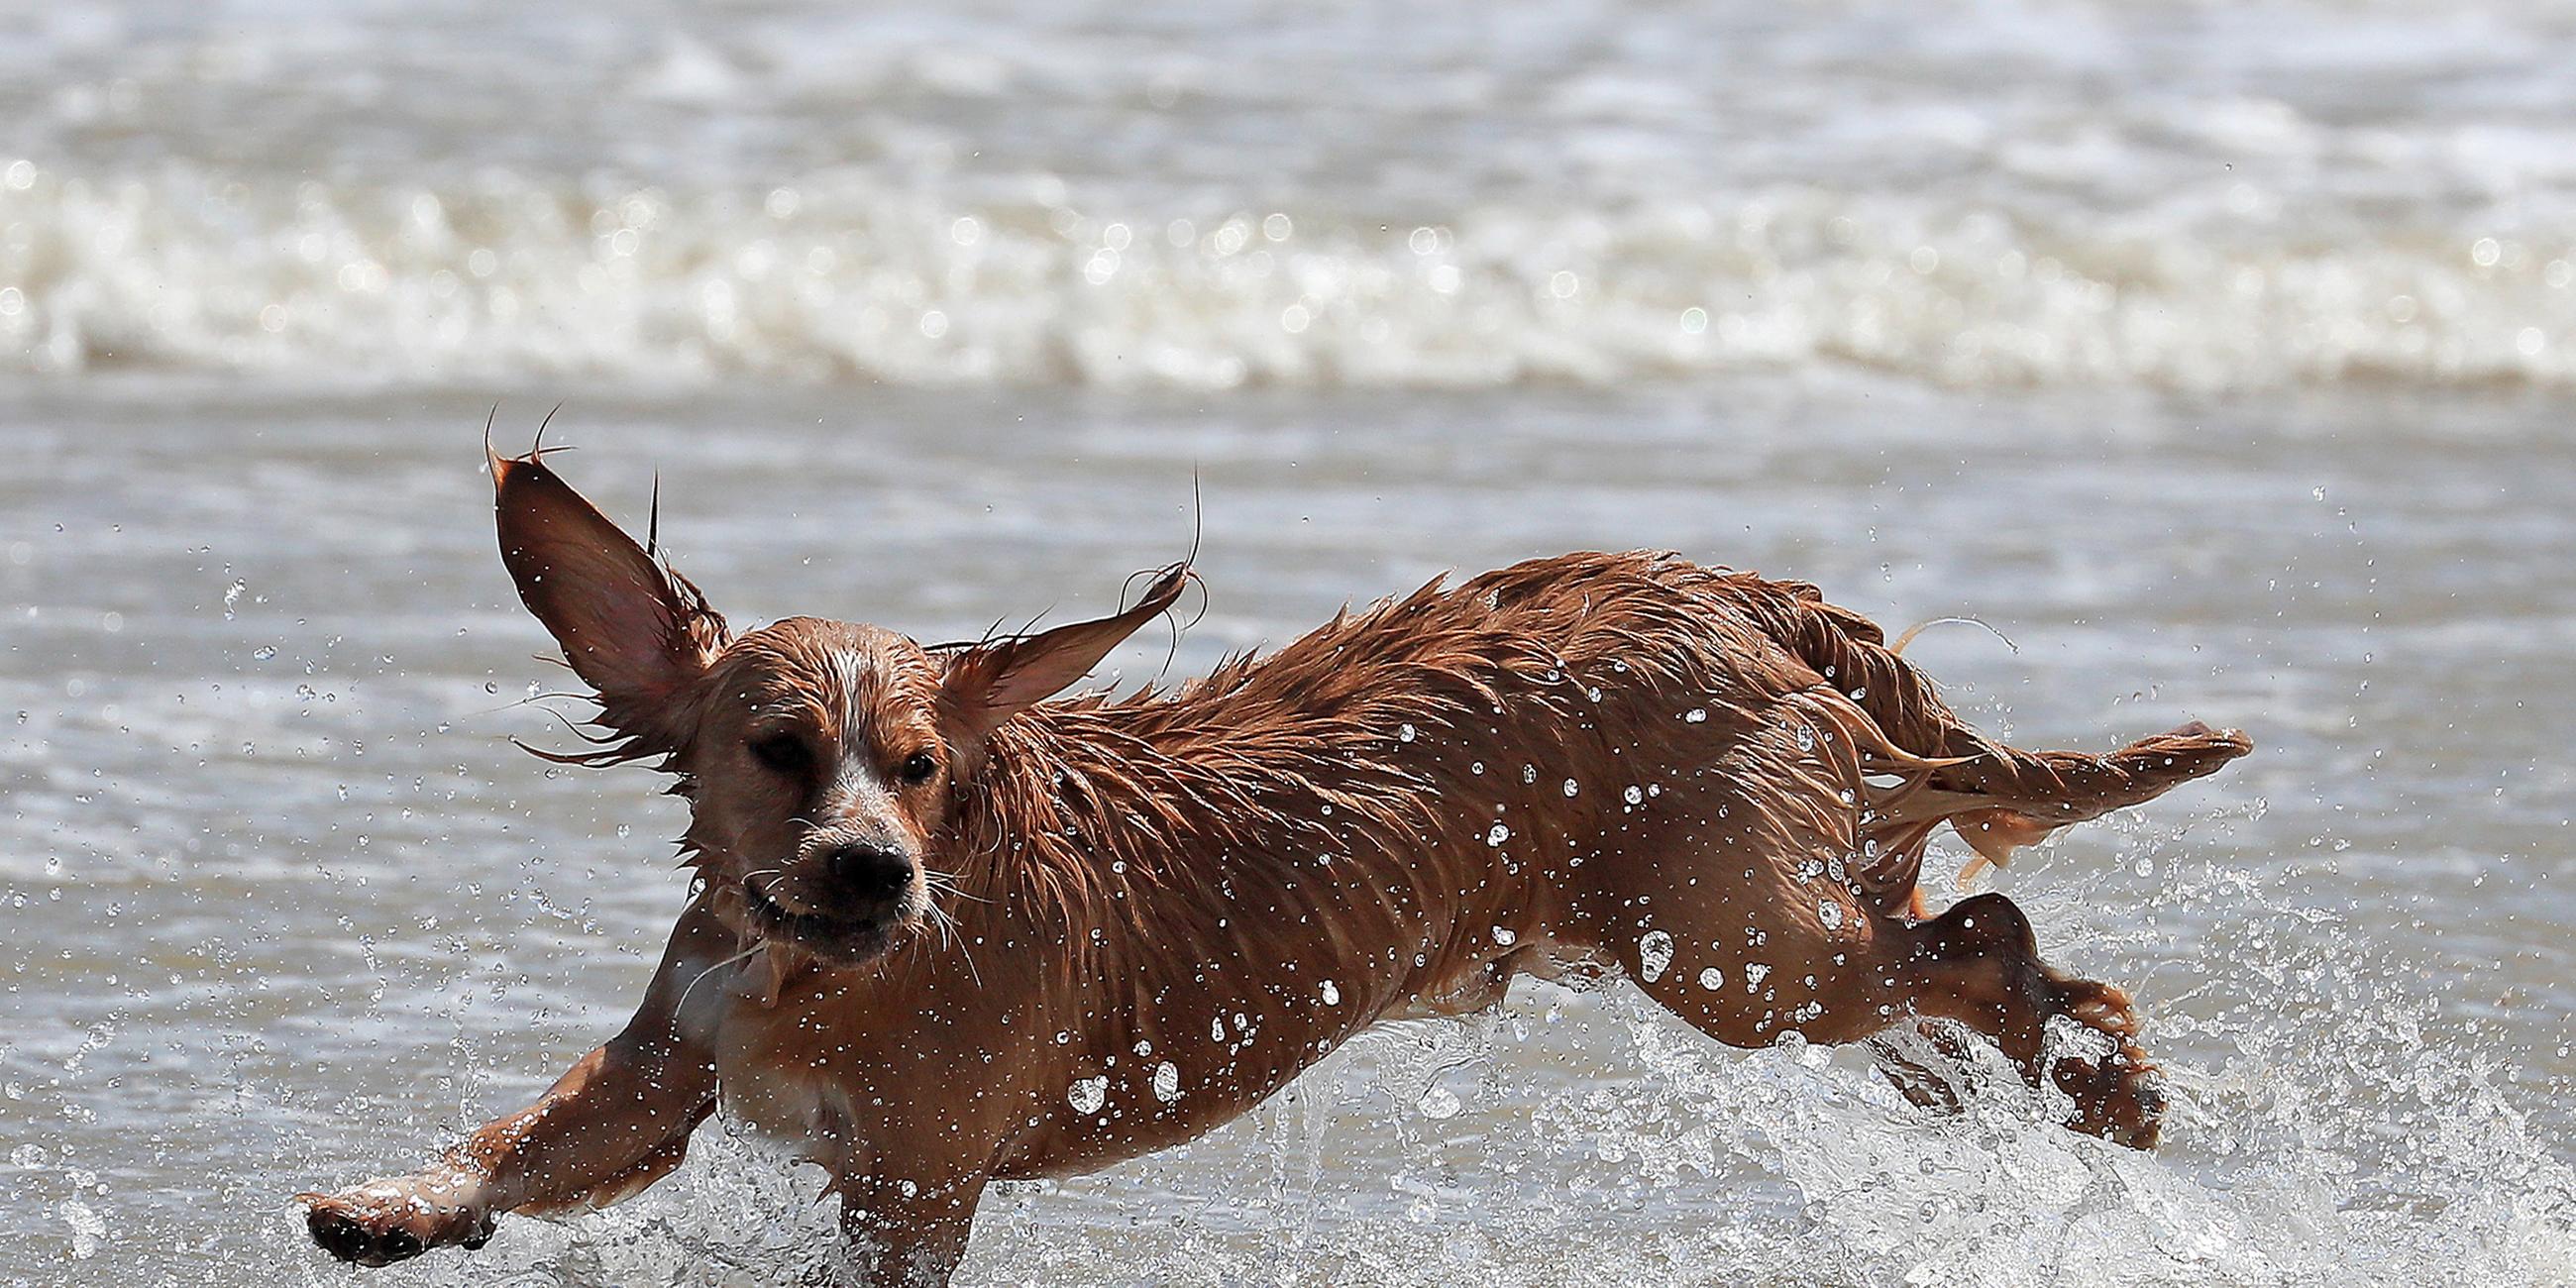 Ein Hund rennt am Strand, aufgenommen am 20.07.2019